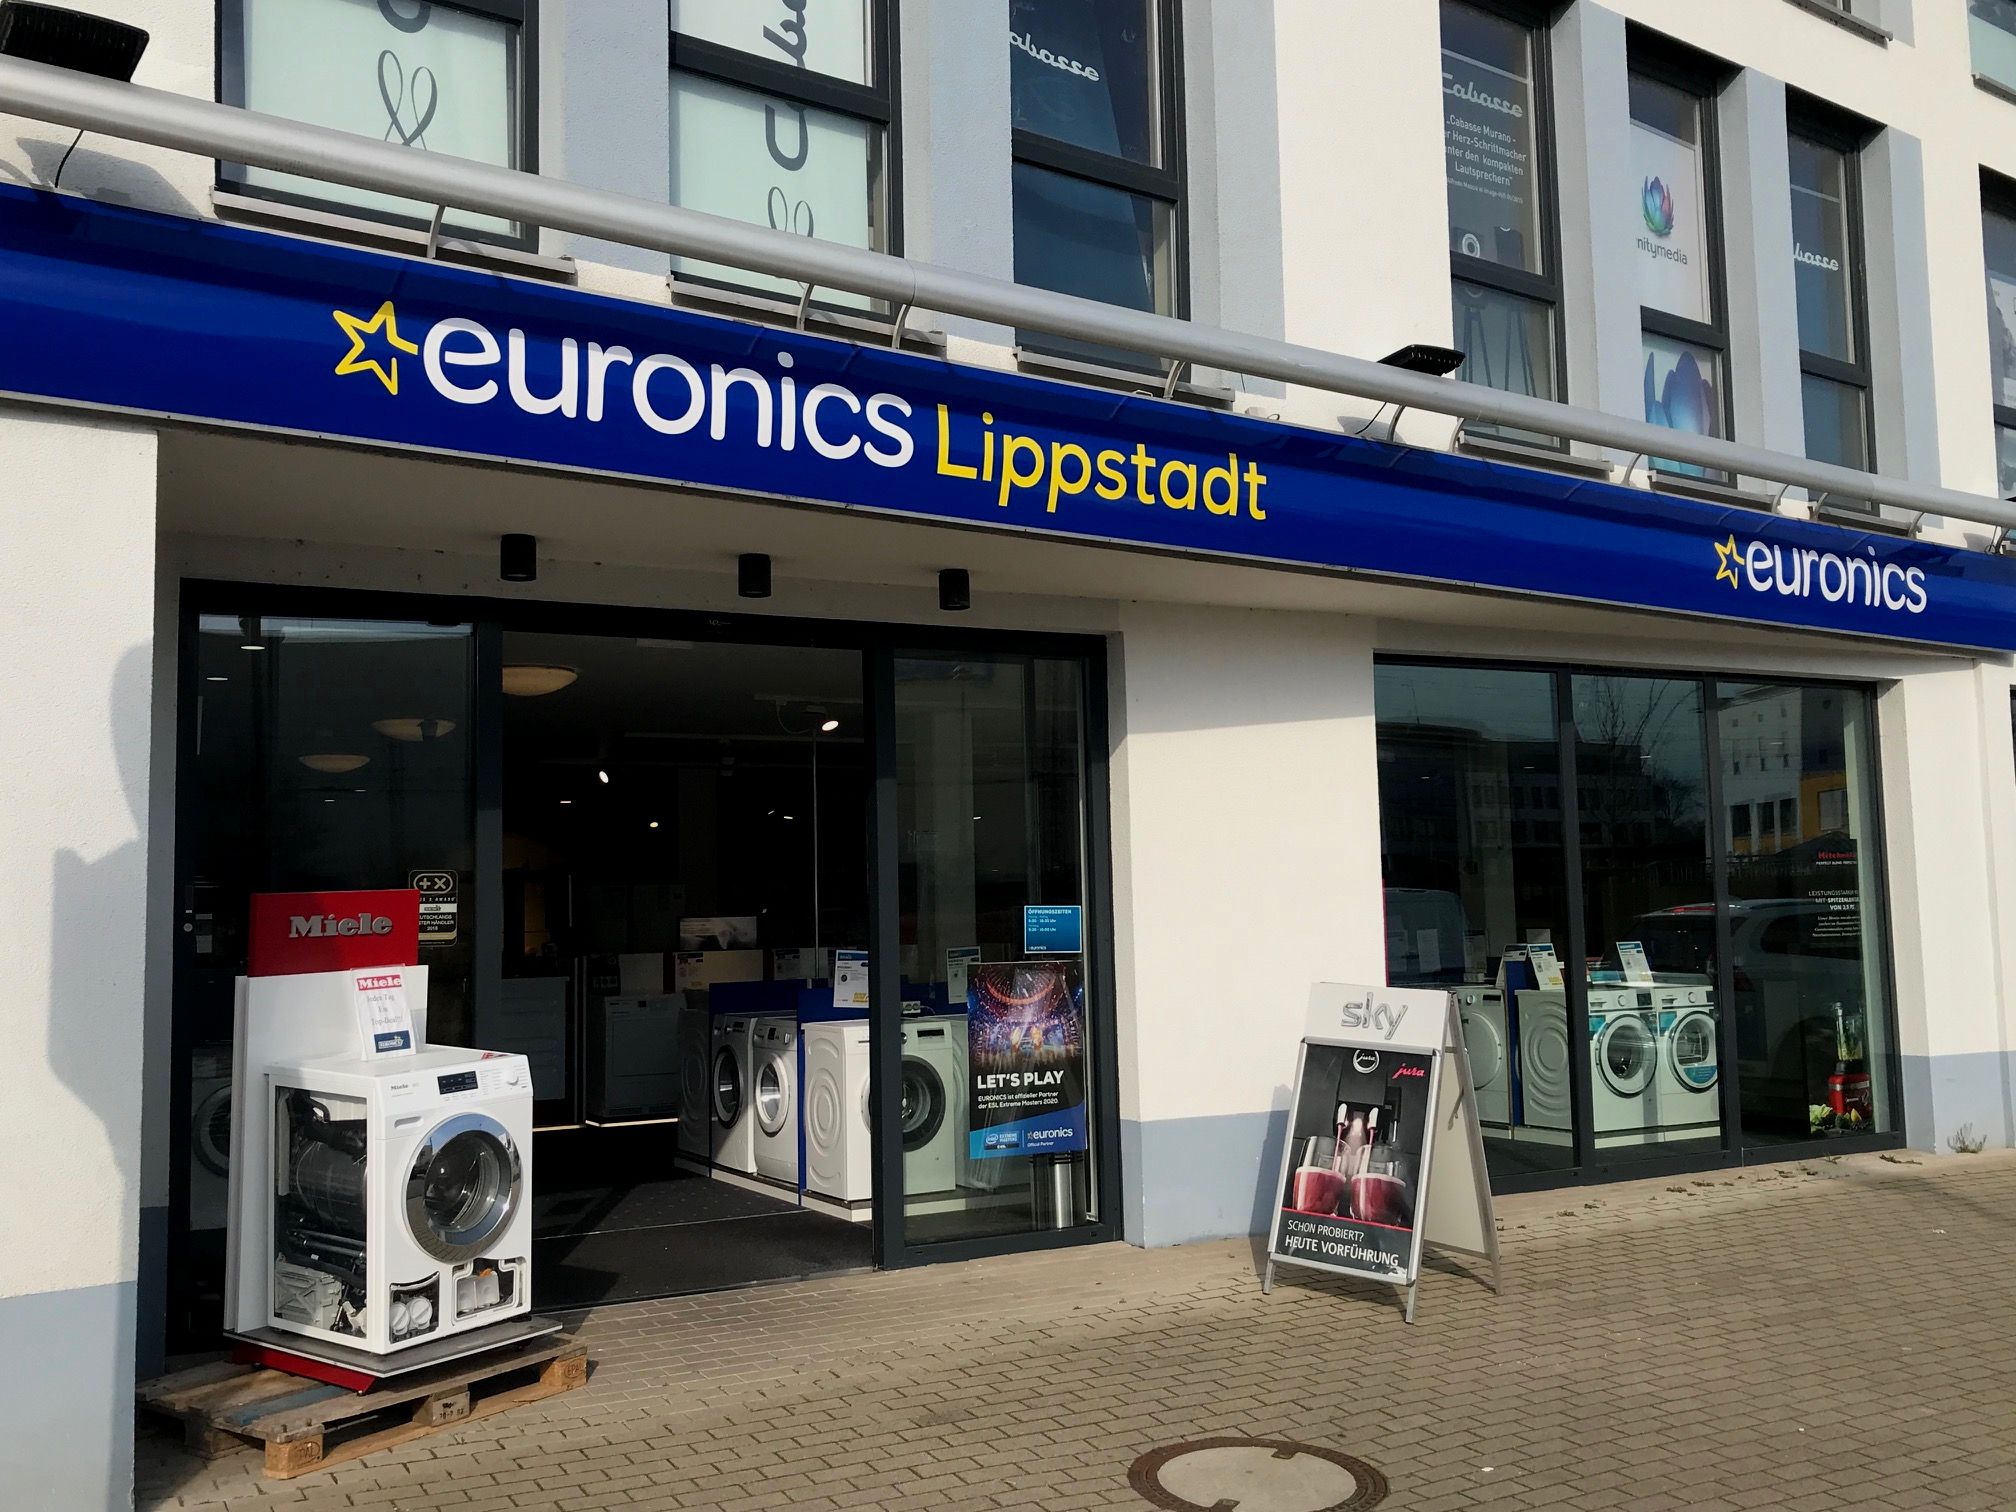 Euronics Lippstadt